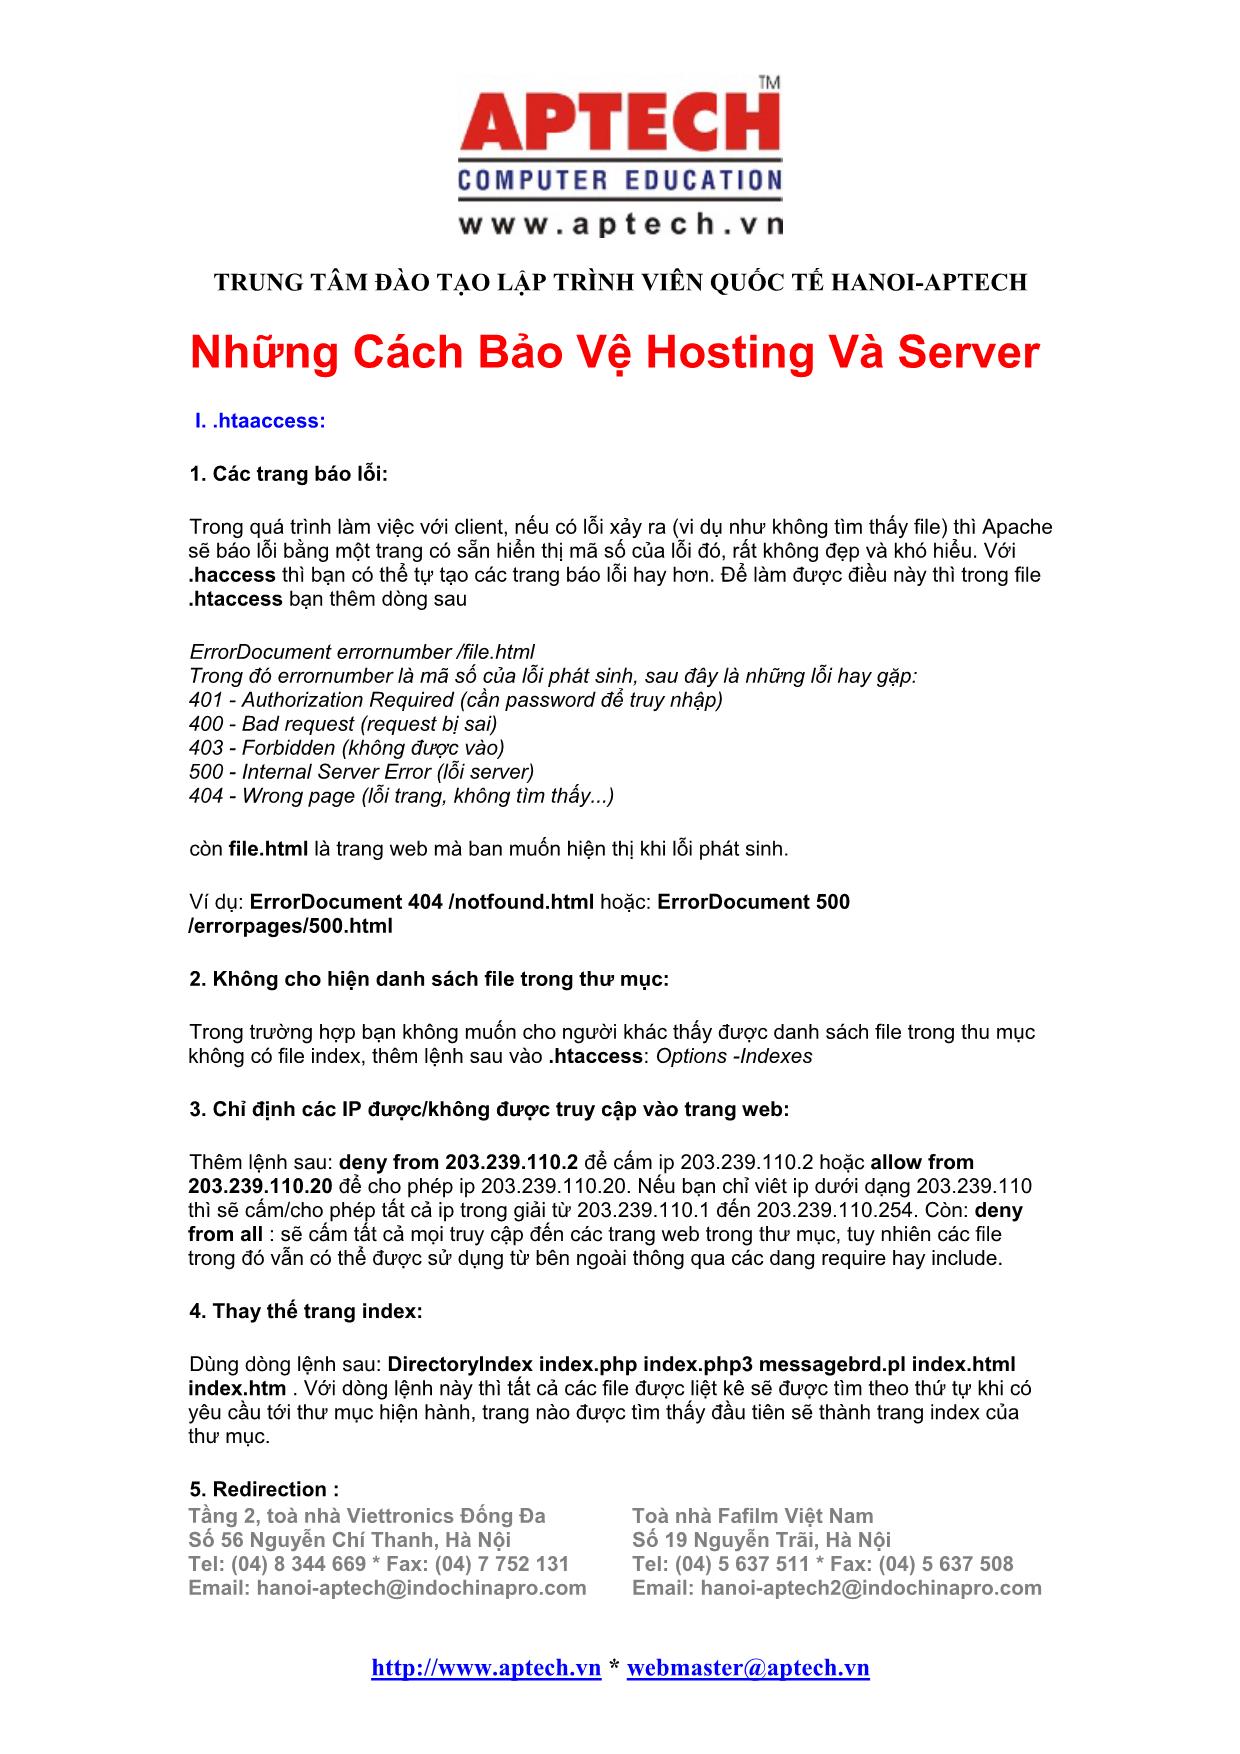 Những cách bảo vệ hosting và server trang 1